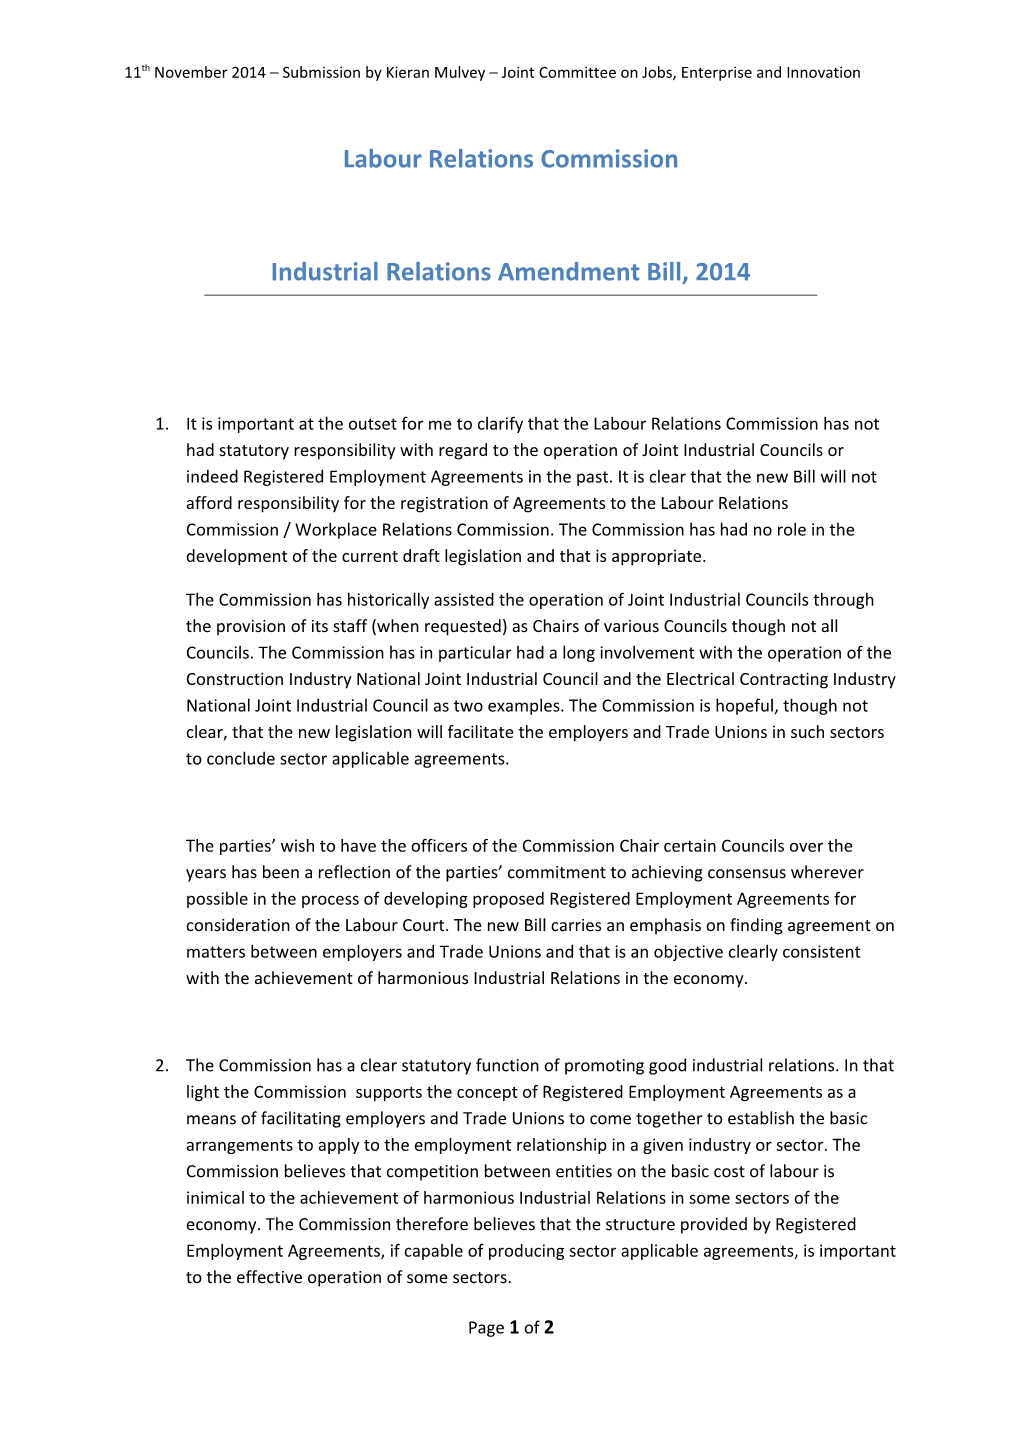 Industrial Relations Amendment Bill, 2014